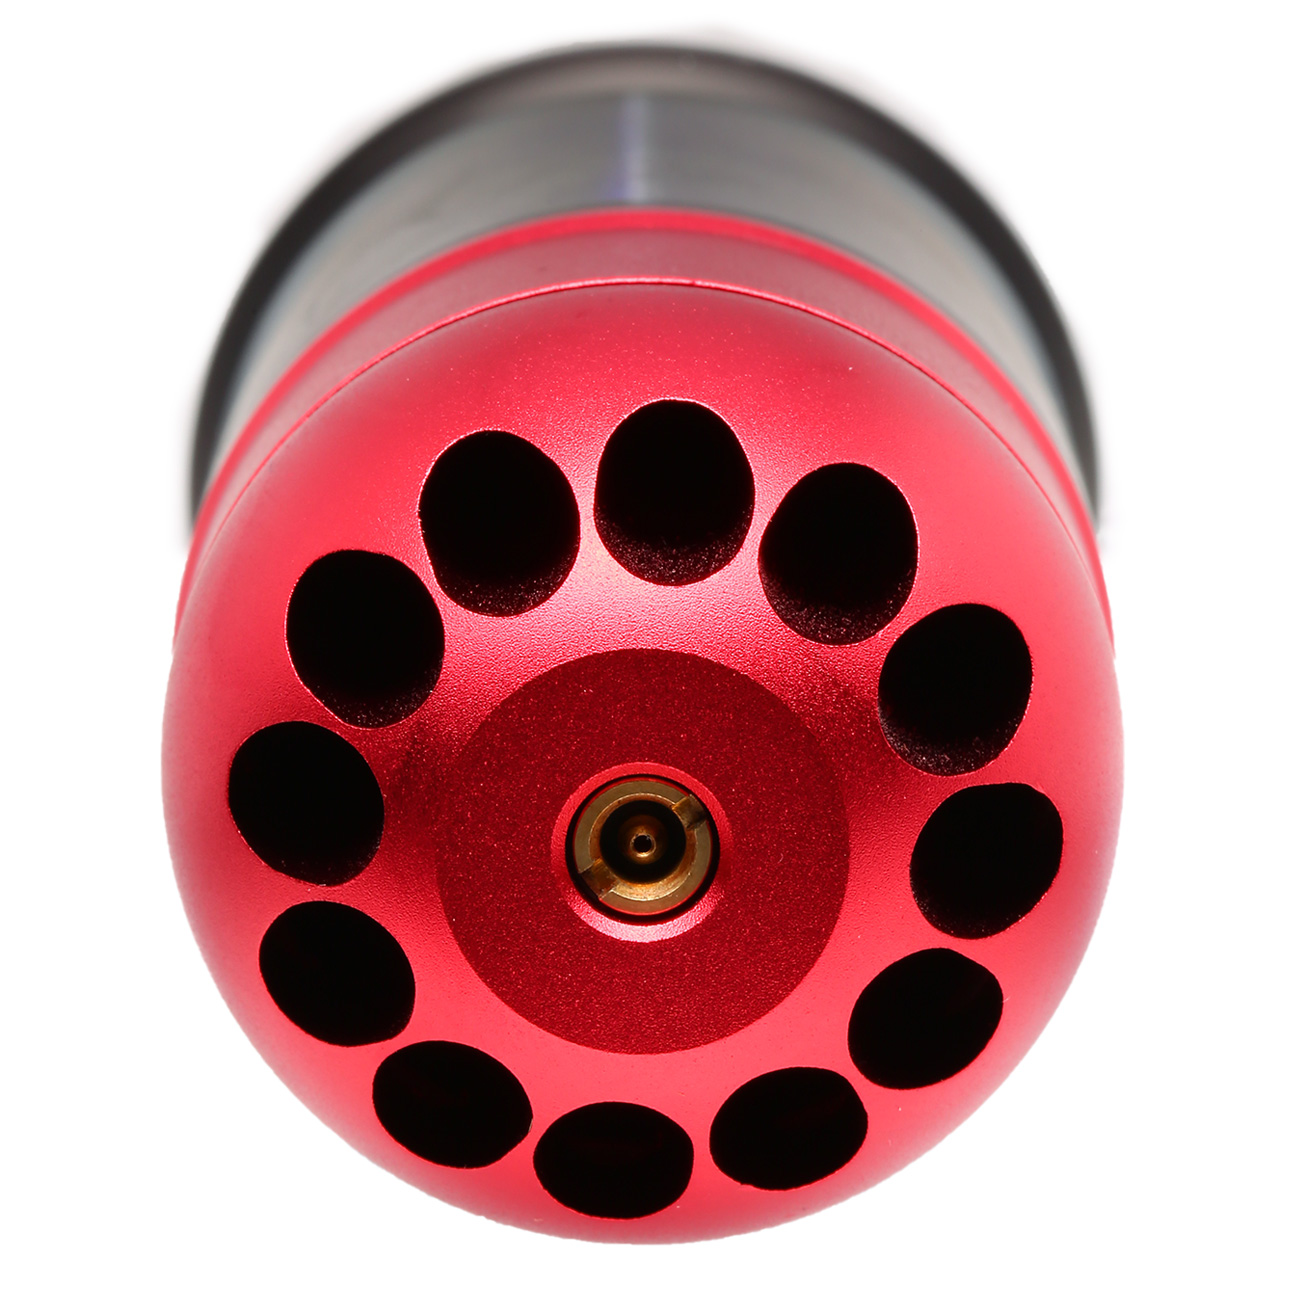 Nuprol 40mm Vollmetall Hülse / Einlegepatrone f. 72 6mm BBs rot Bild 3